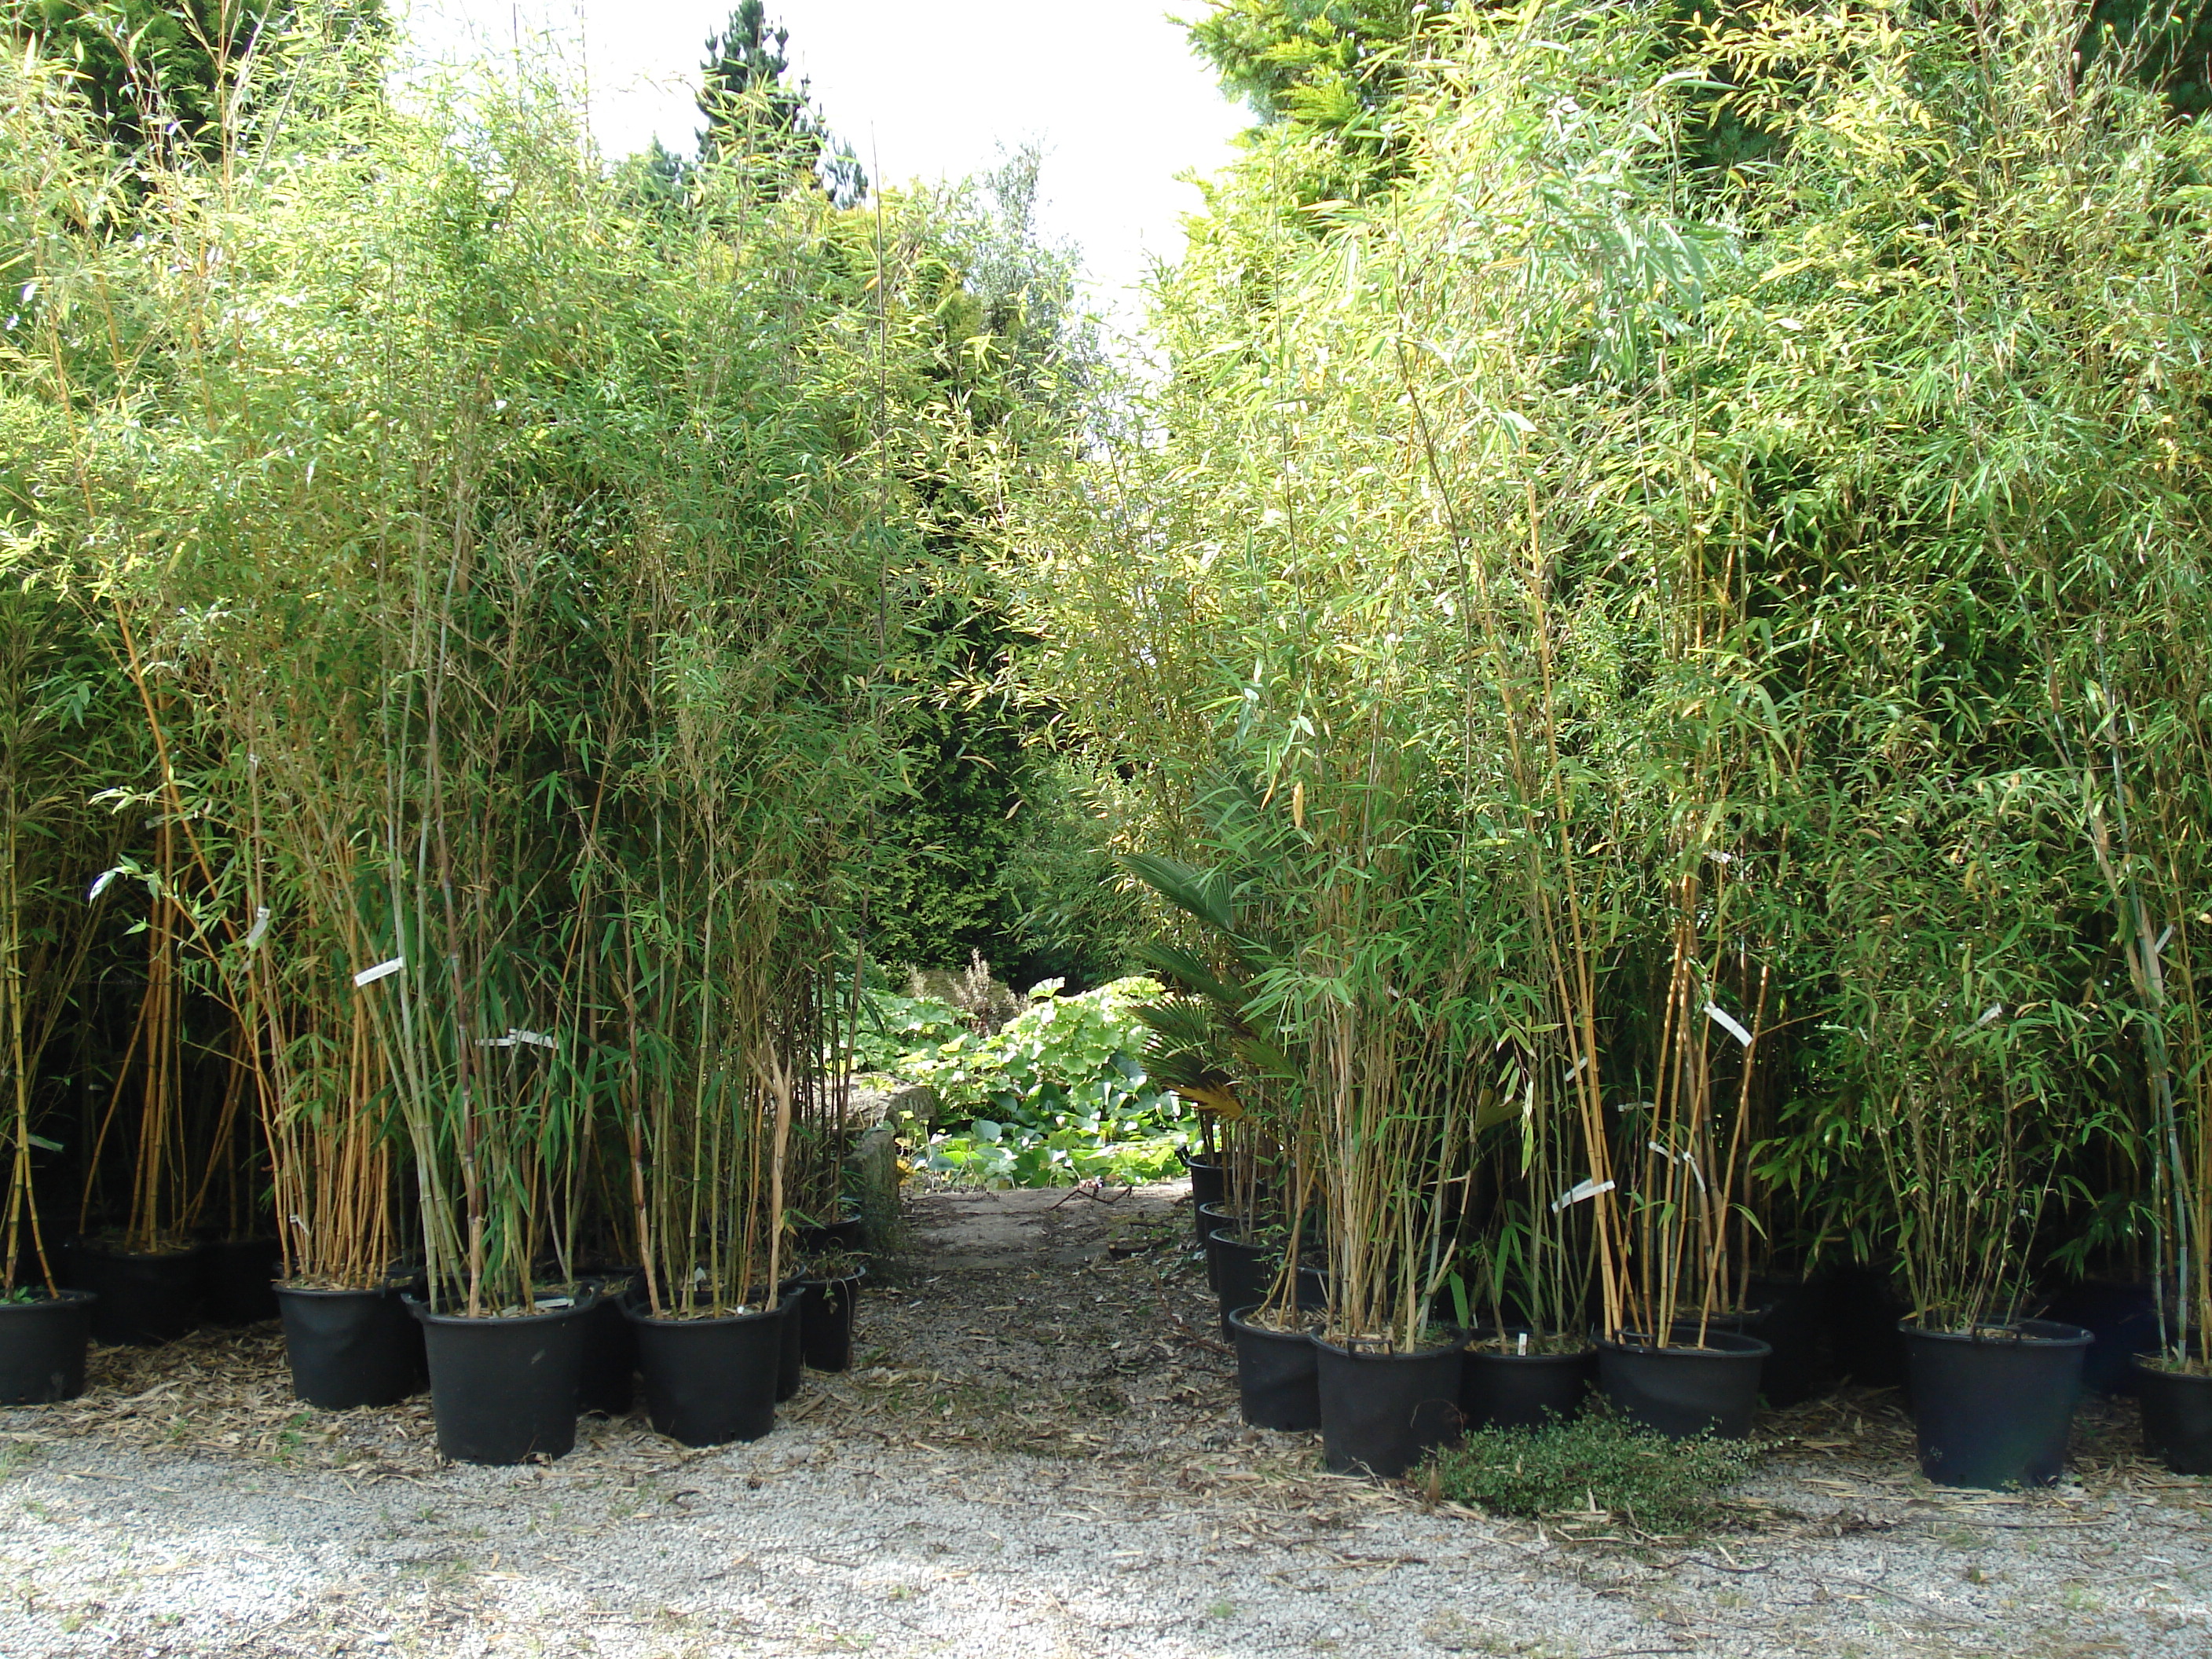 Specimen sized bamboo